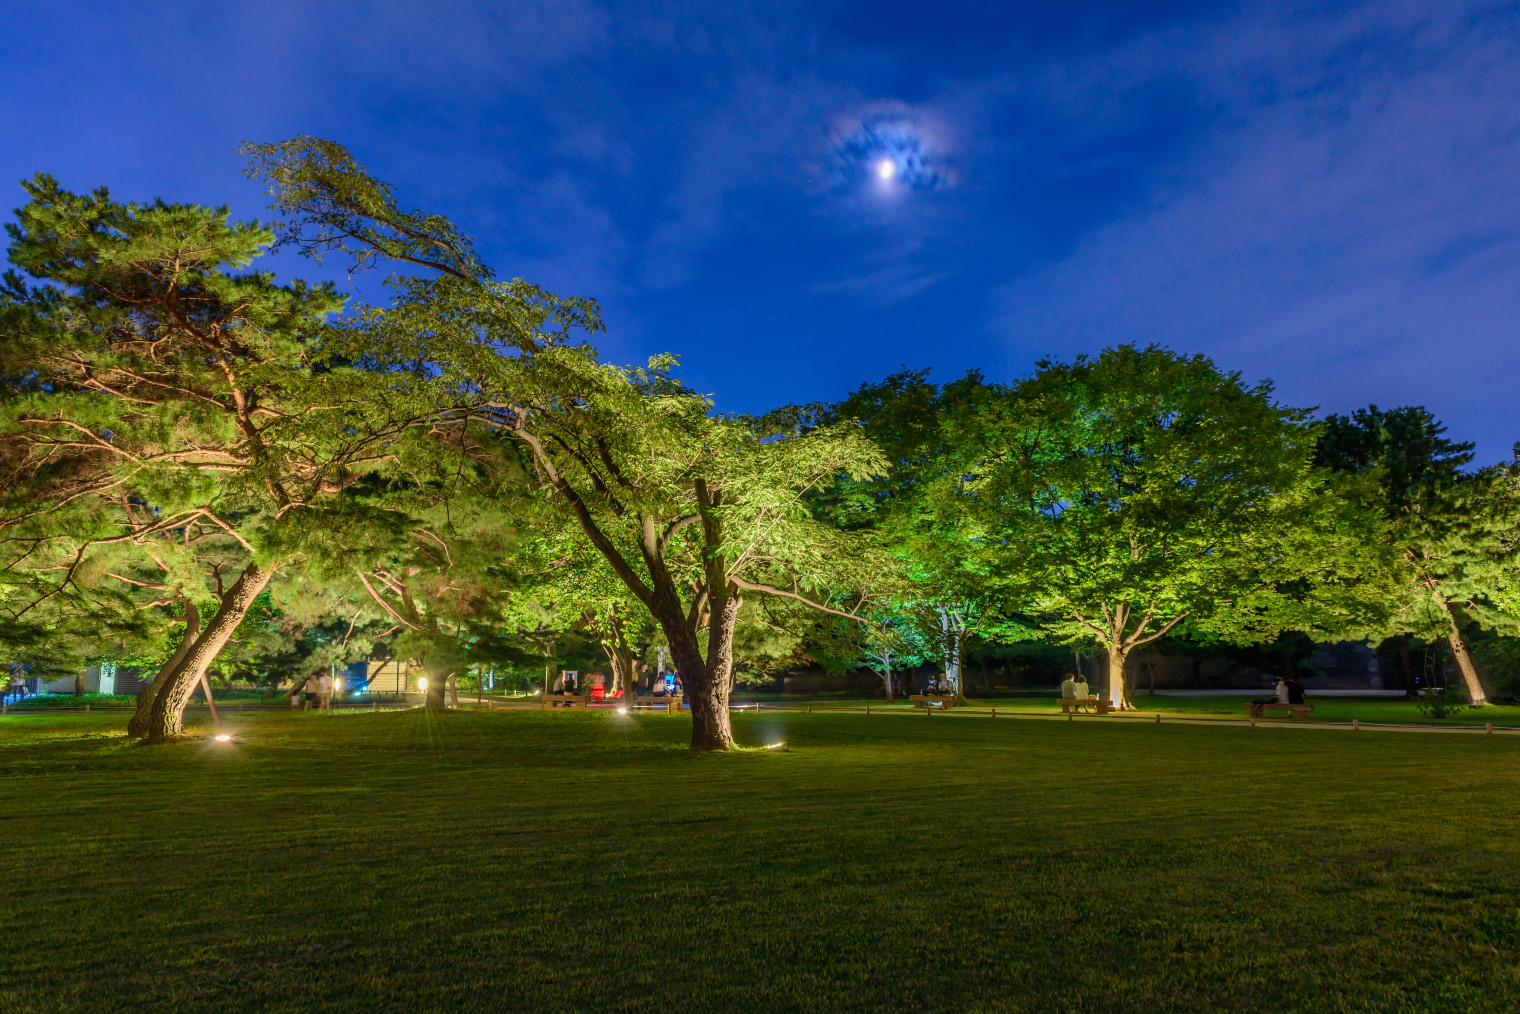 Подсветка деревьев снизу выделяет растения на участке. Здесь у дальнего дерева не соблюдено правило охранной зоны под кроной, но иногда возможны отступления в угоду красоте. Фото: Daengpanya Atakorn / Shutterstock